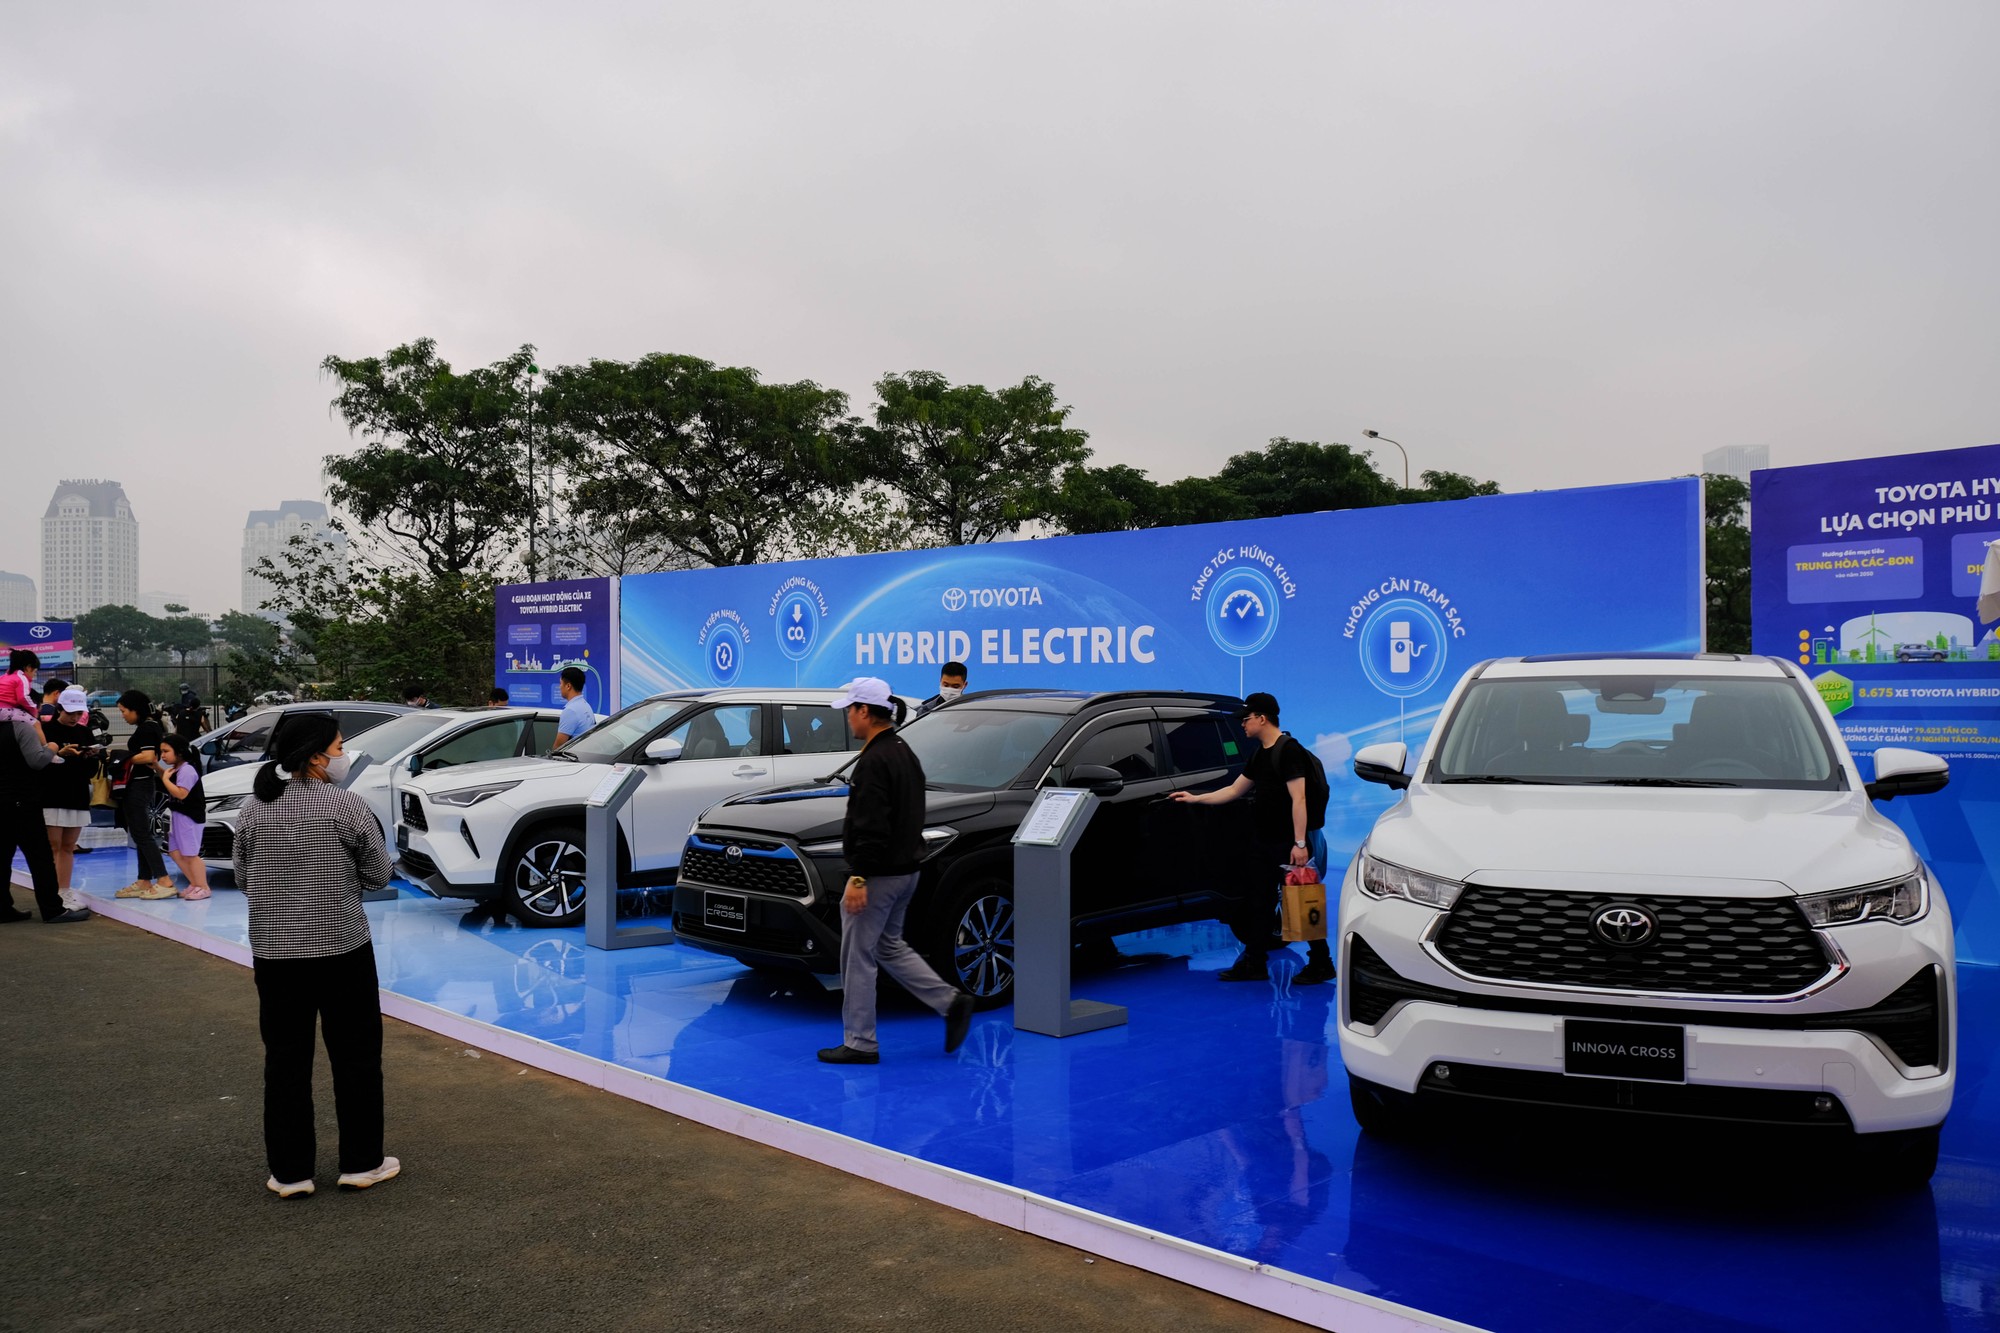 Tr&ecirc;n thực tế, Toyota Việt Nam hiện cung cấp nhiều d&ograve;ng sản phẩm hybrid nhất ở Việt Nam với 5 mẫu xe kể từ năm 2020. T&iacute;nh đến hết năm 2023, doanh số b&aacute;n xe hybrid của h&atilde;ng xe n&agrave;y l&ecirc;n đến hơn 8.500 chiếc.